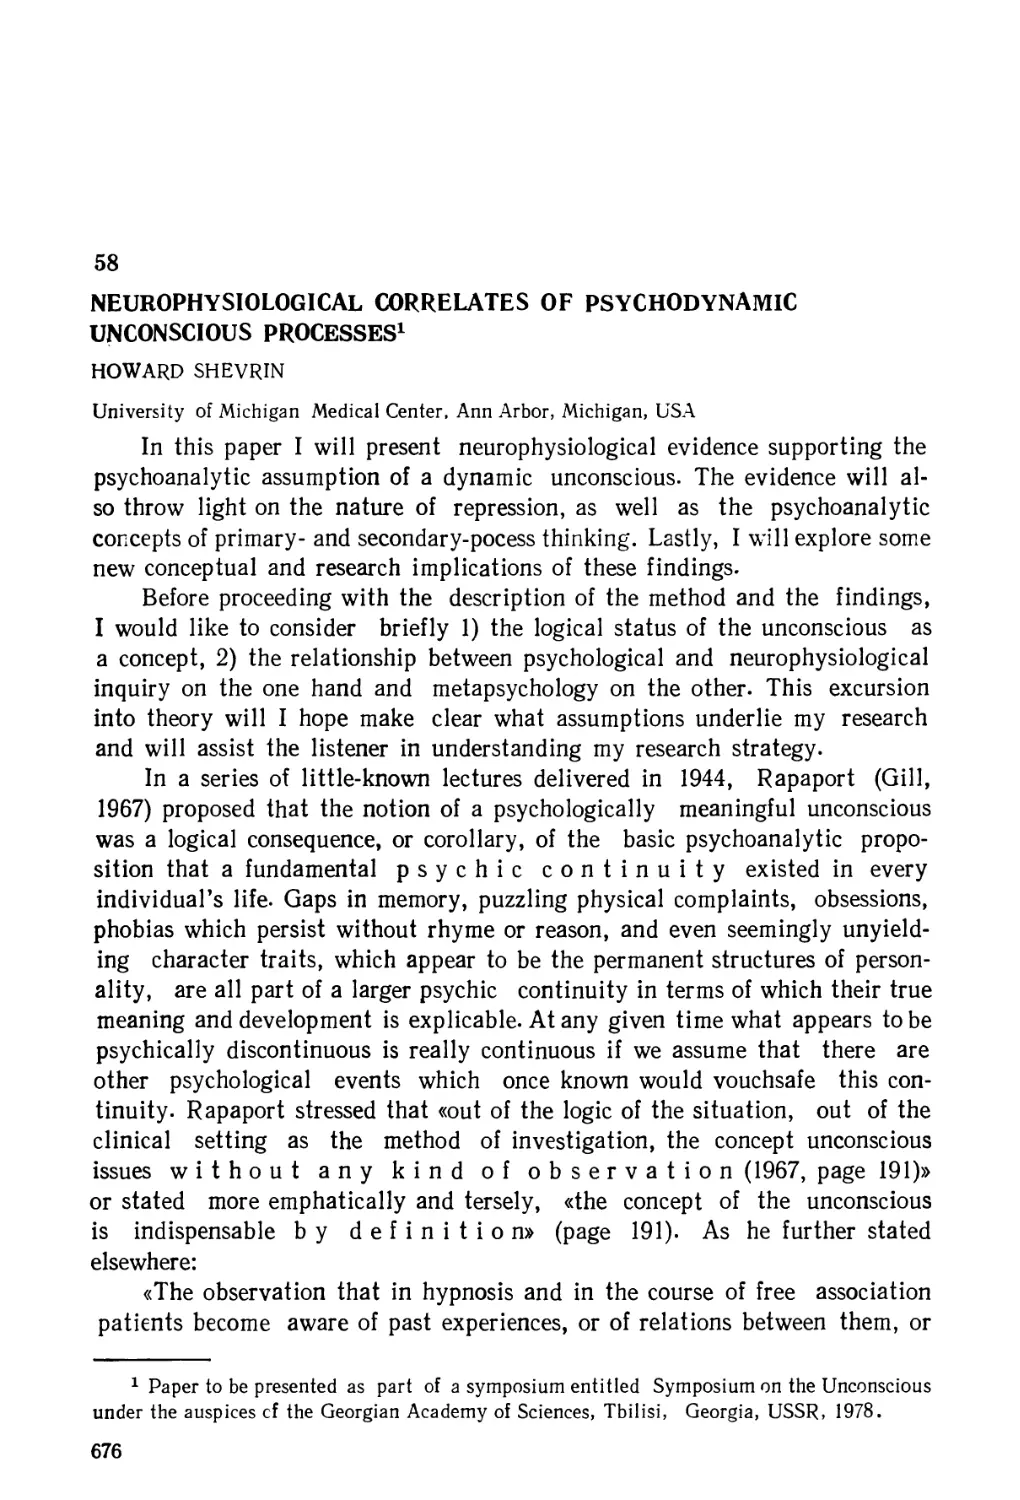 58. Нейрофизиологические корреляты психодинамических неосознаваемых процессов - Г. Шеврин
58. Neurophysiological Correlates of Psychodynamic Unconscious Processes - H. Shevrin